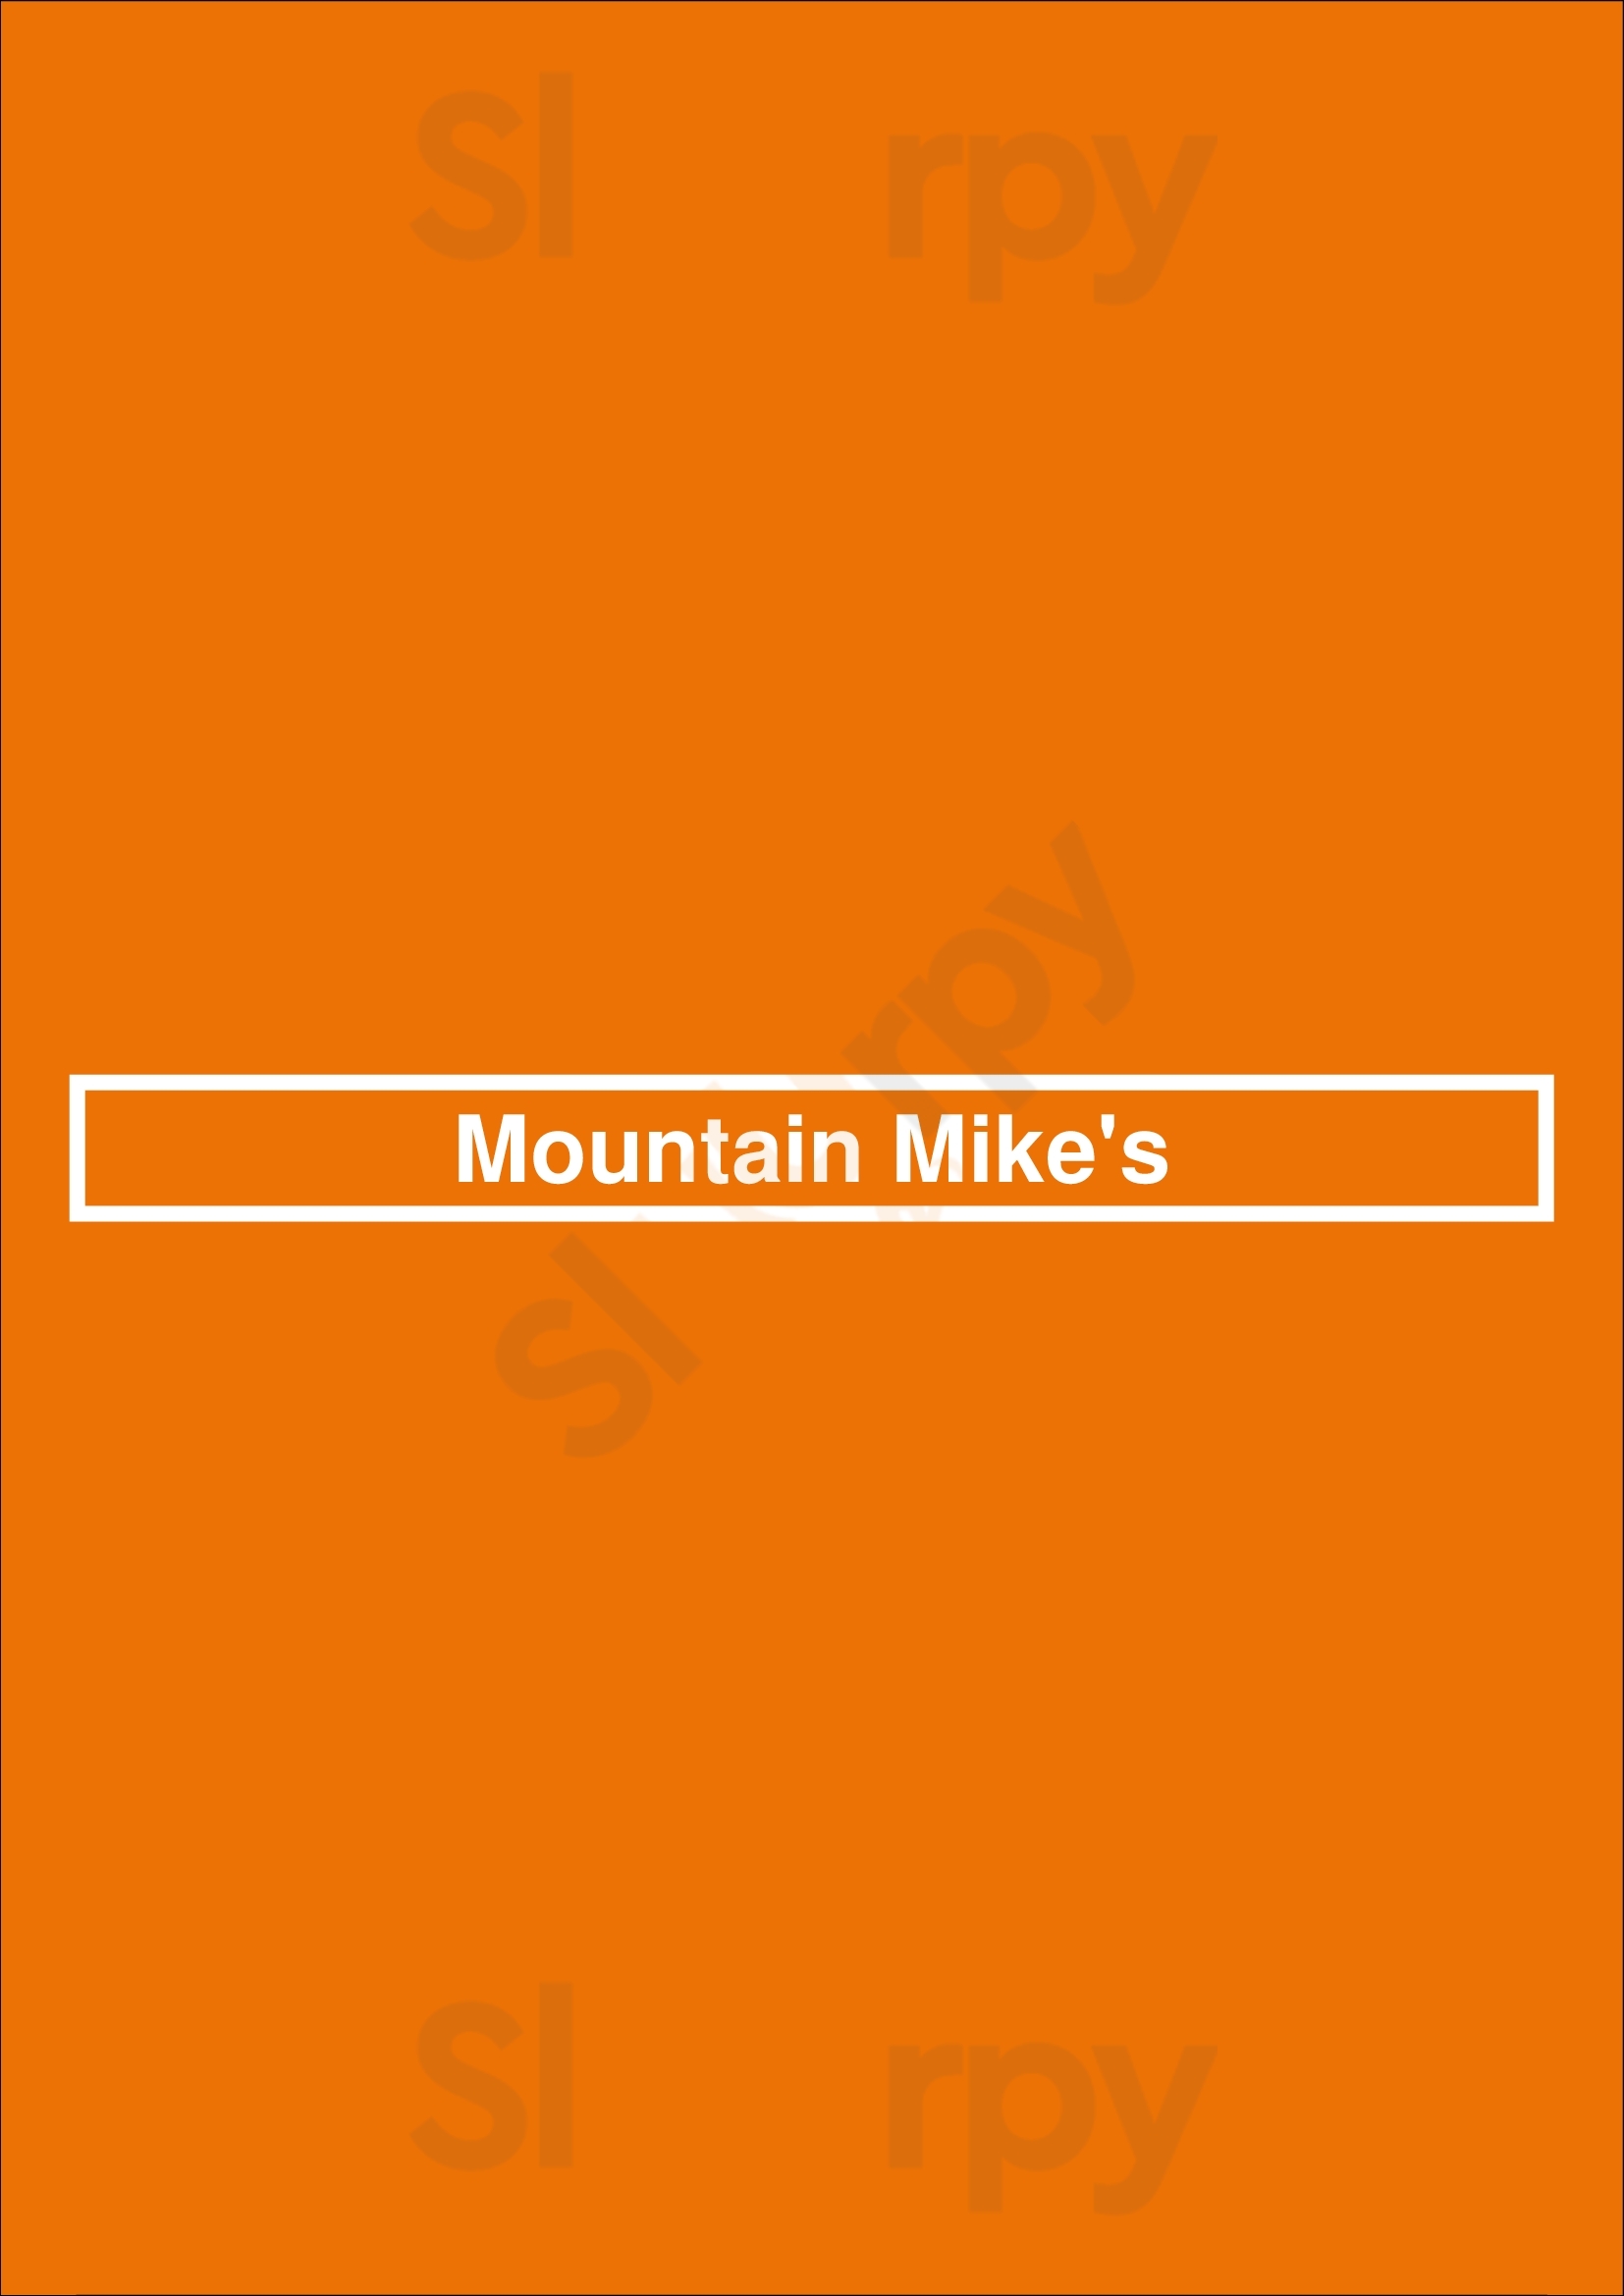 Mountain Mike's Vacaville Menu - 1